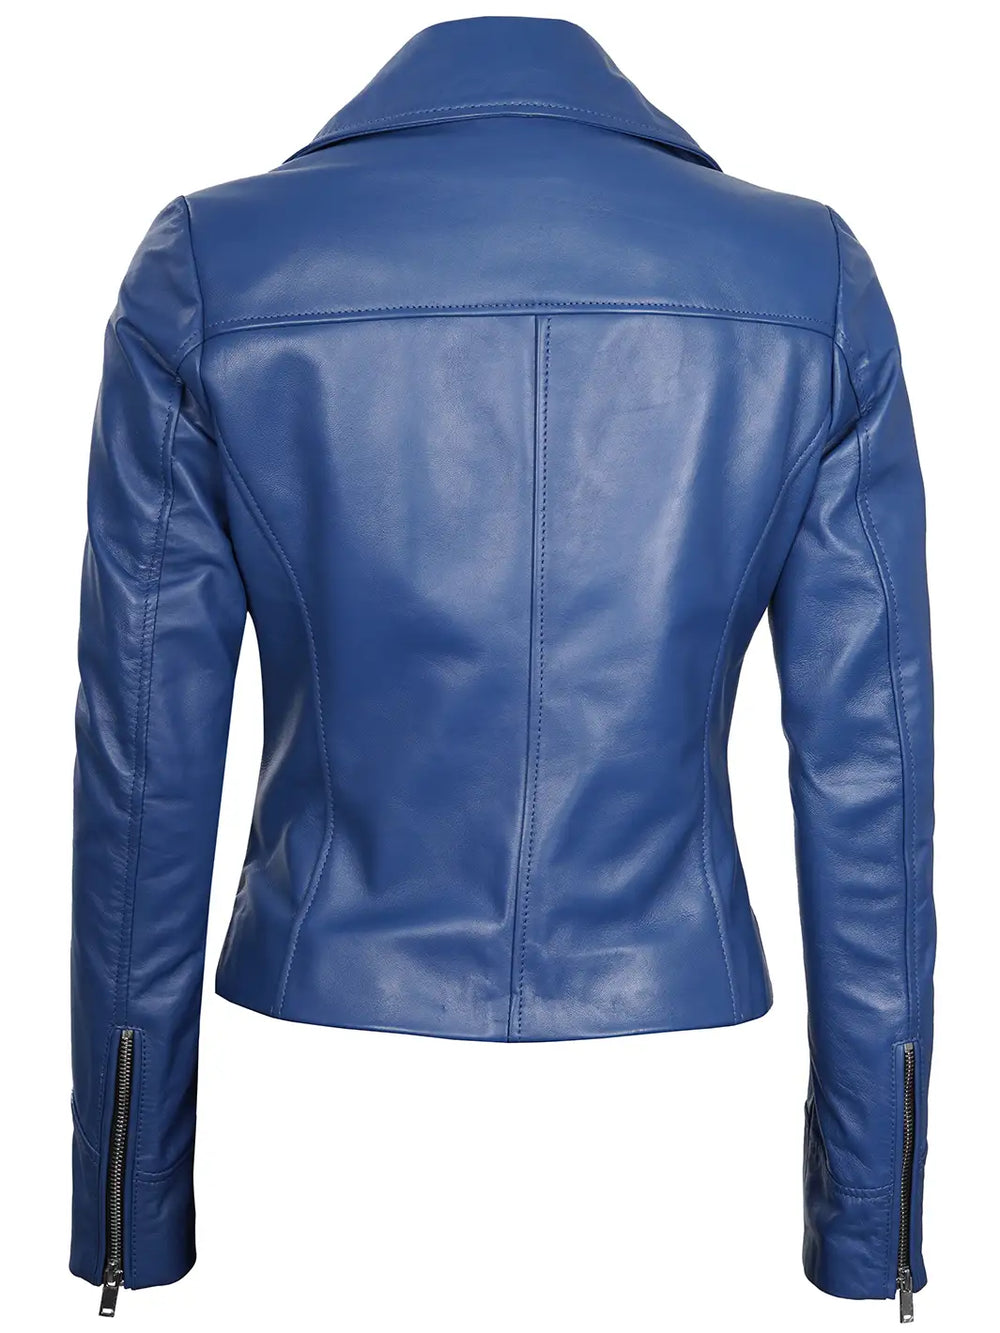 Women leather biker jacket